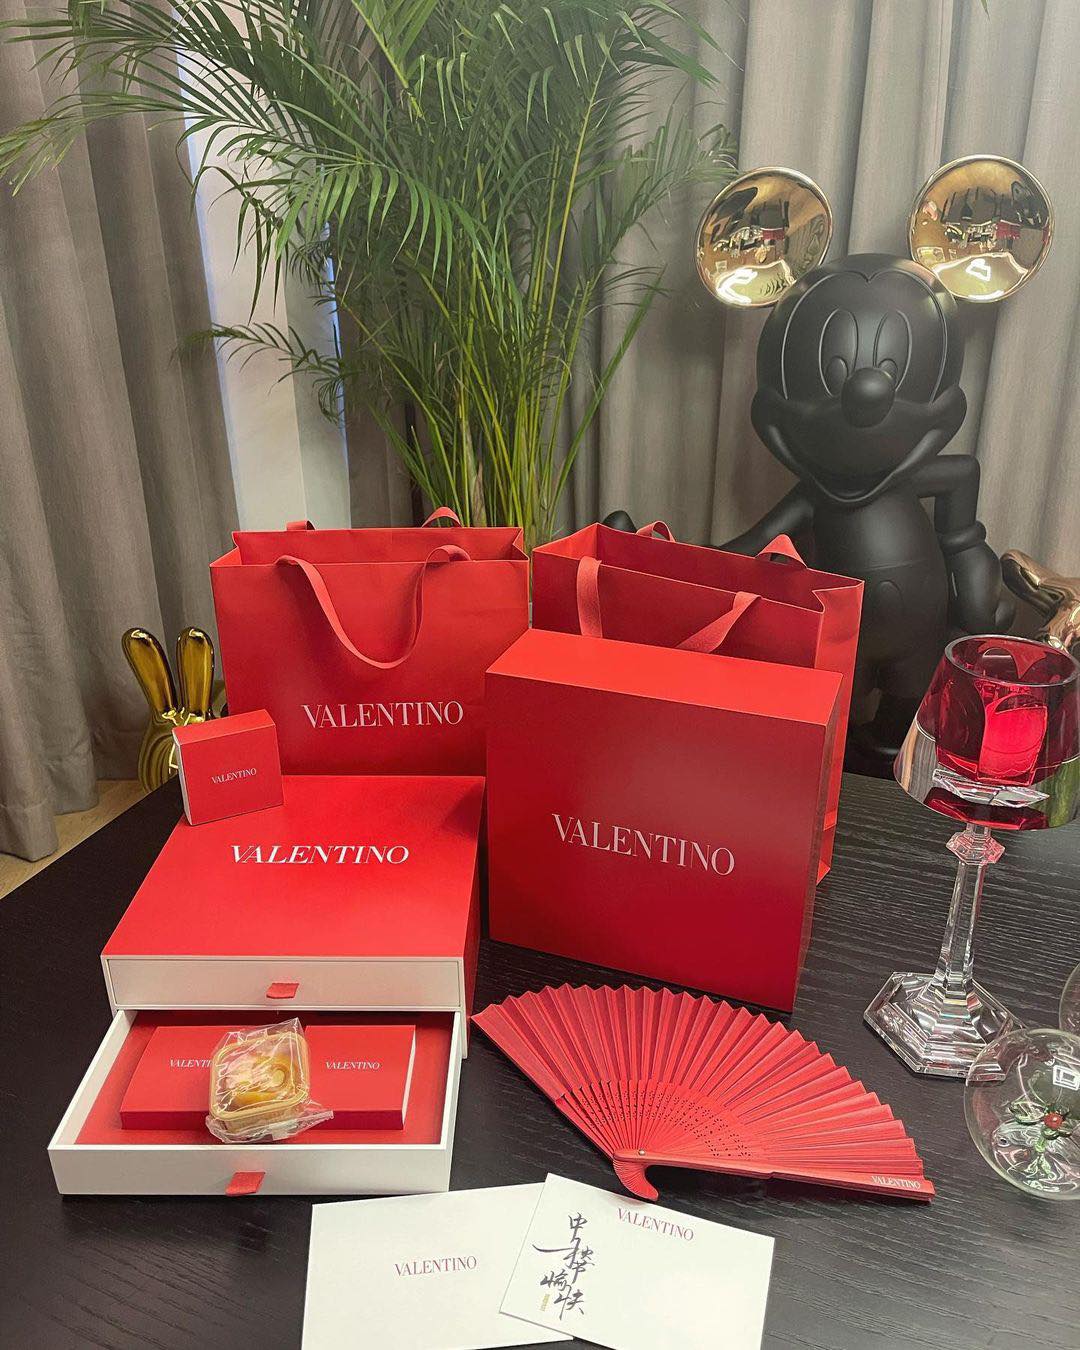 Valentino mang sắc đỏ đặc trưng của thương hiệu vào thiết kế hộp bánh.